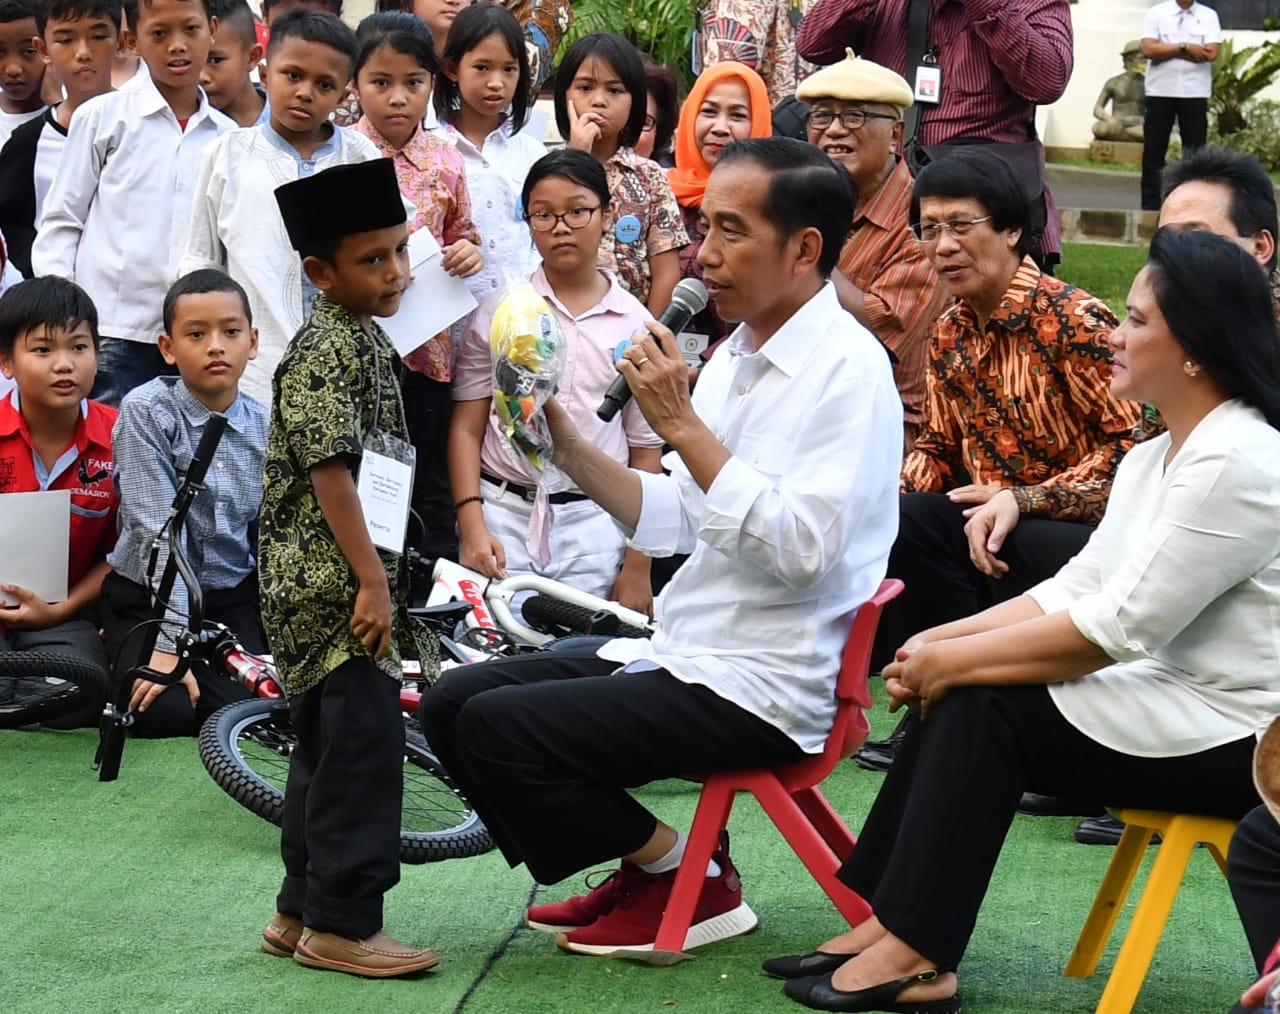 Presiden Jokowi saat bercanda dengan anak-anak di halaman Istana Merdeka, Jakarta, Jumat, 20 Juli 2018. (Foto: Divisi Pers Presiden)